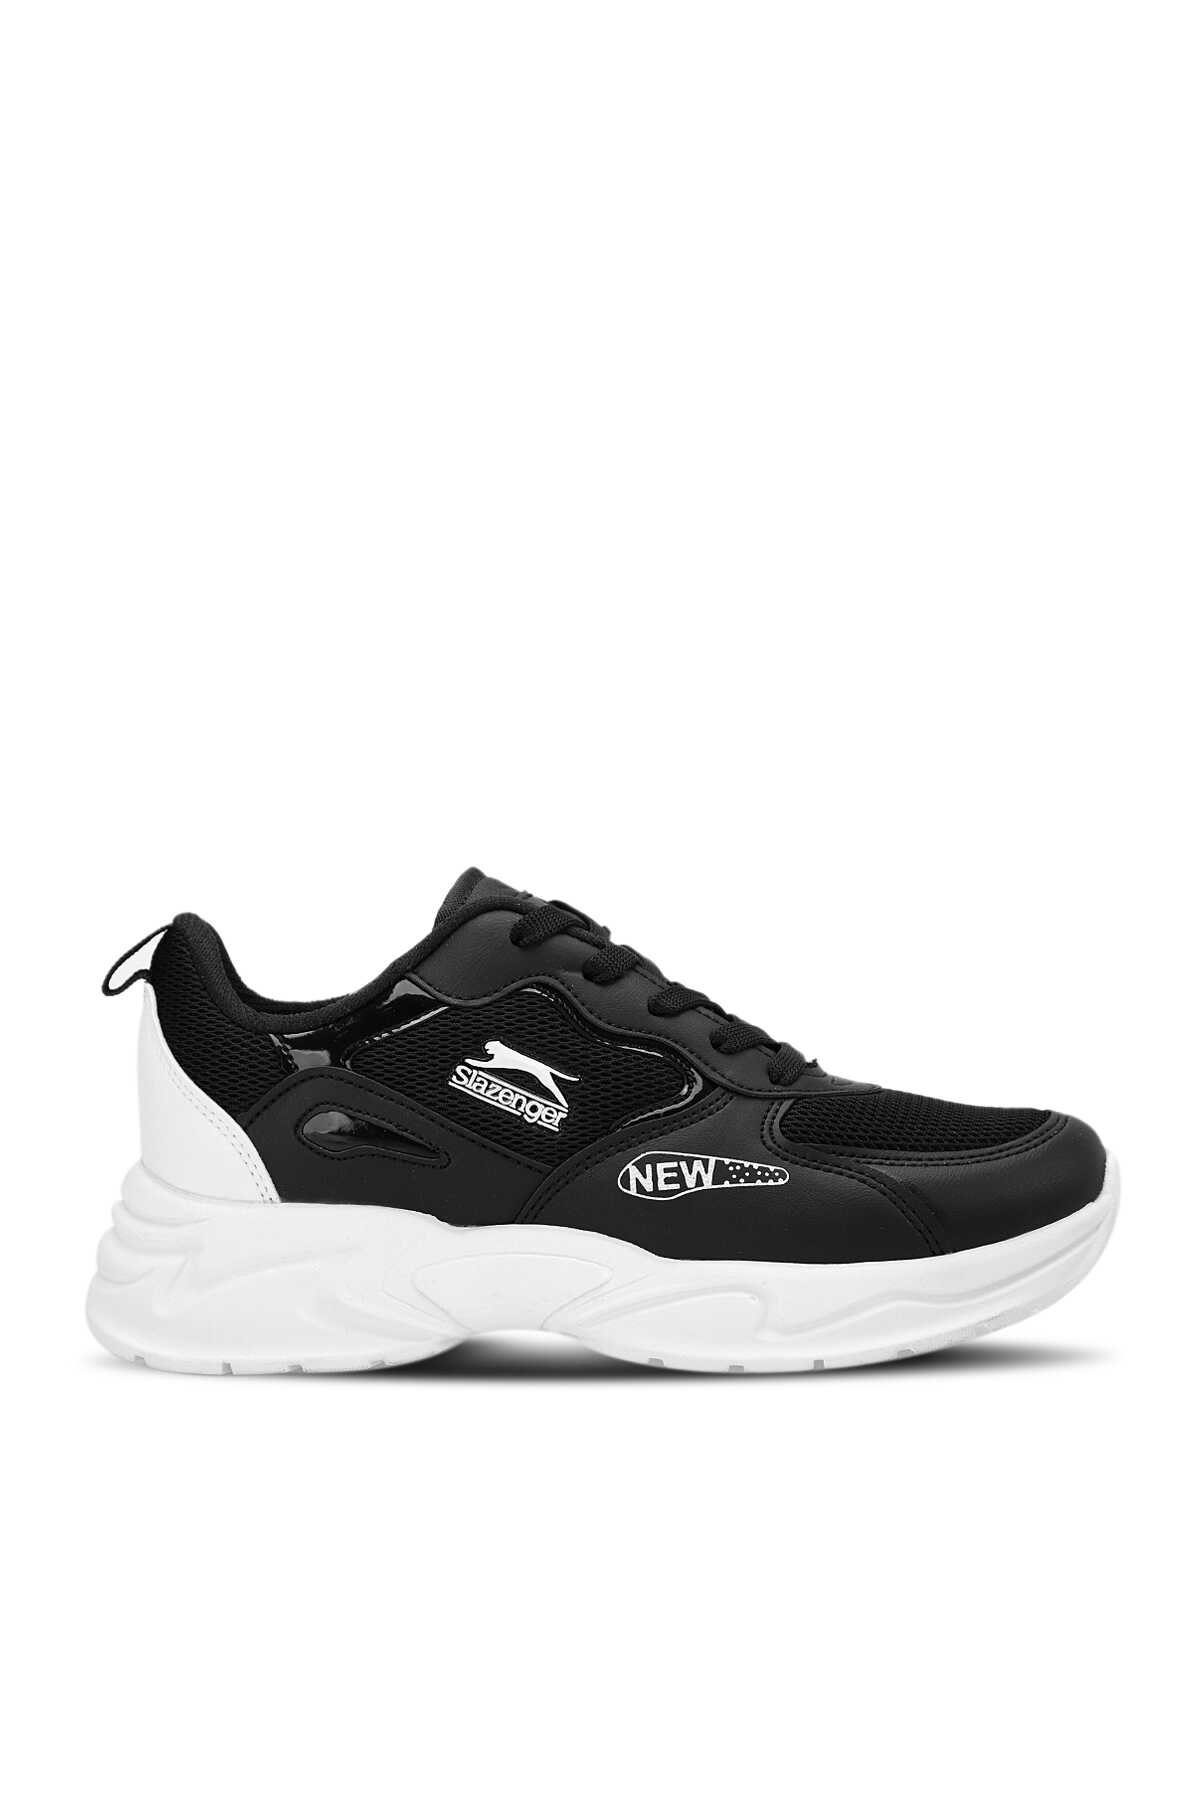 Slazenger - KALYSTA I Sneaker Kadın Ayakkabı Siyah / Beyaz